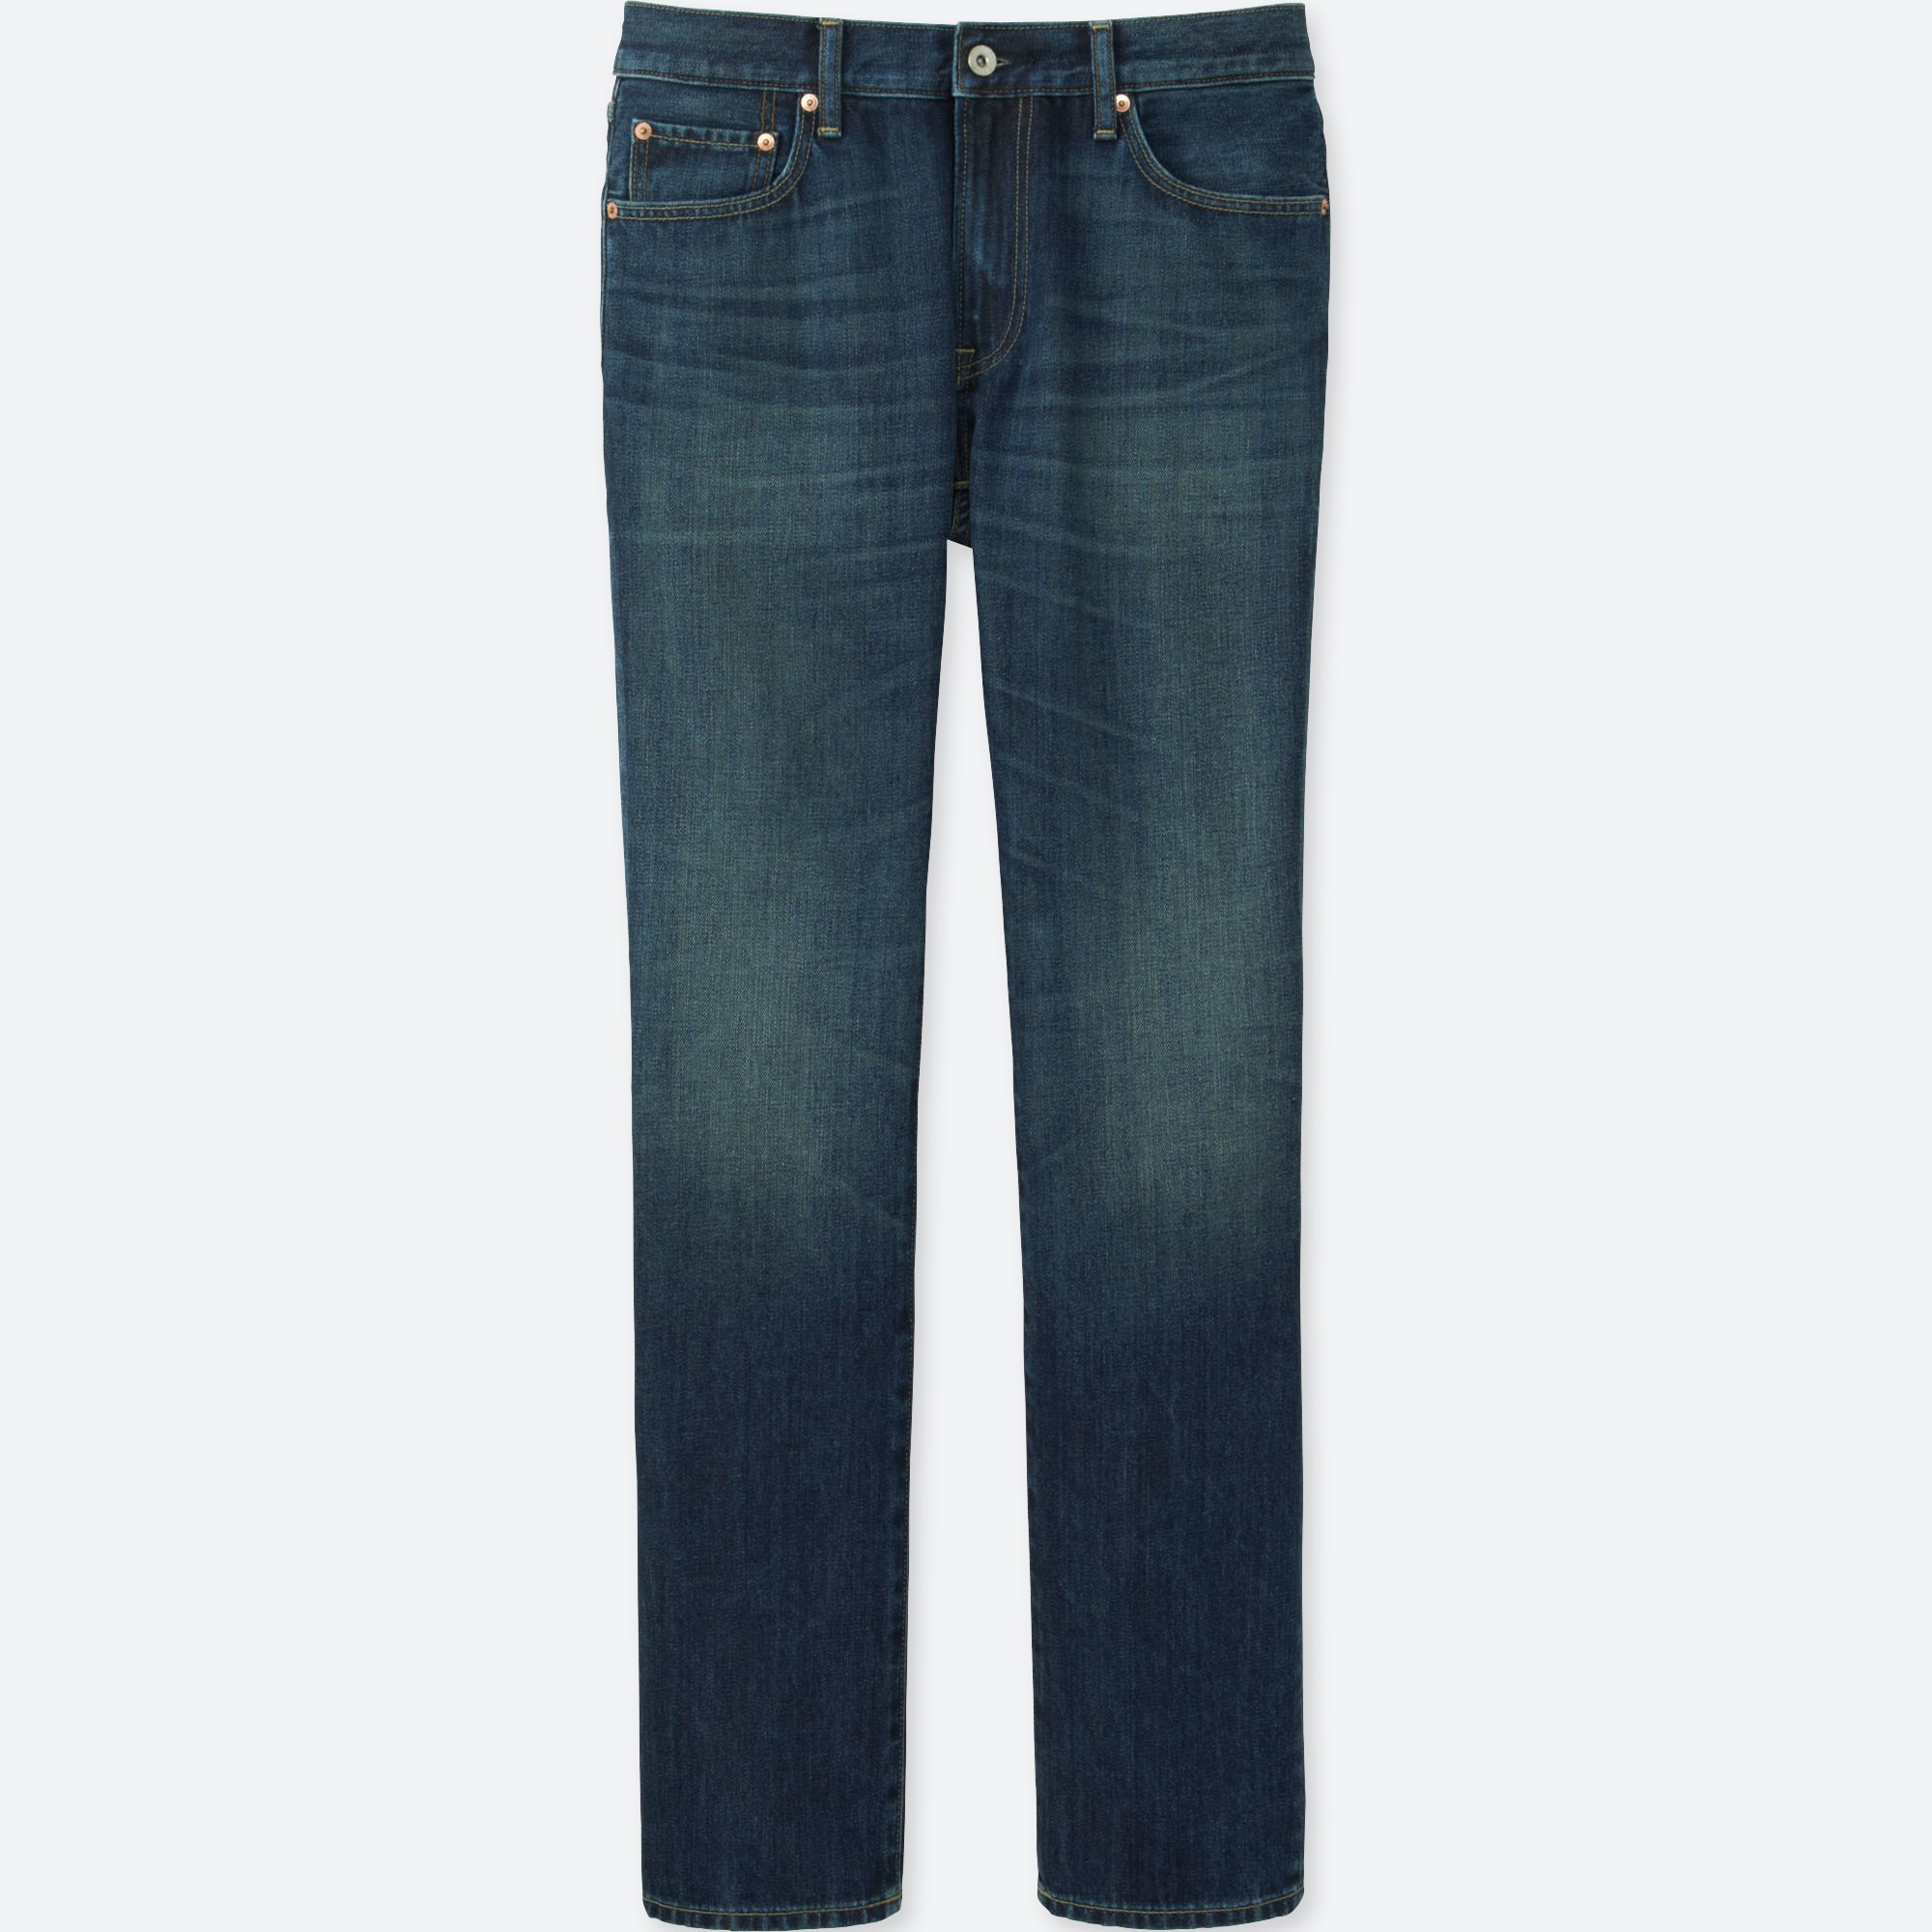 blue jeans regular fit